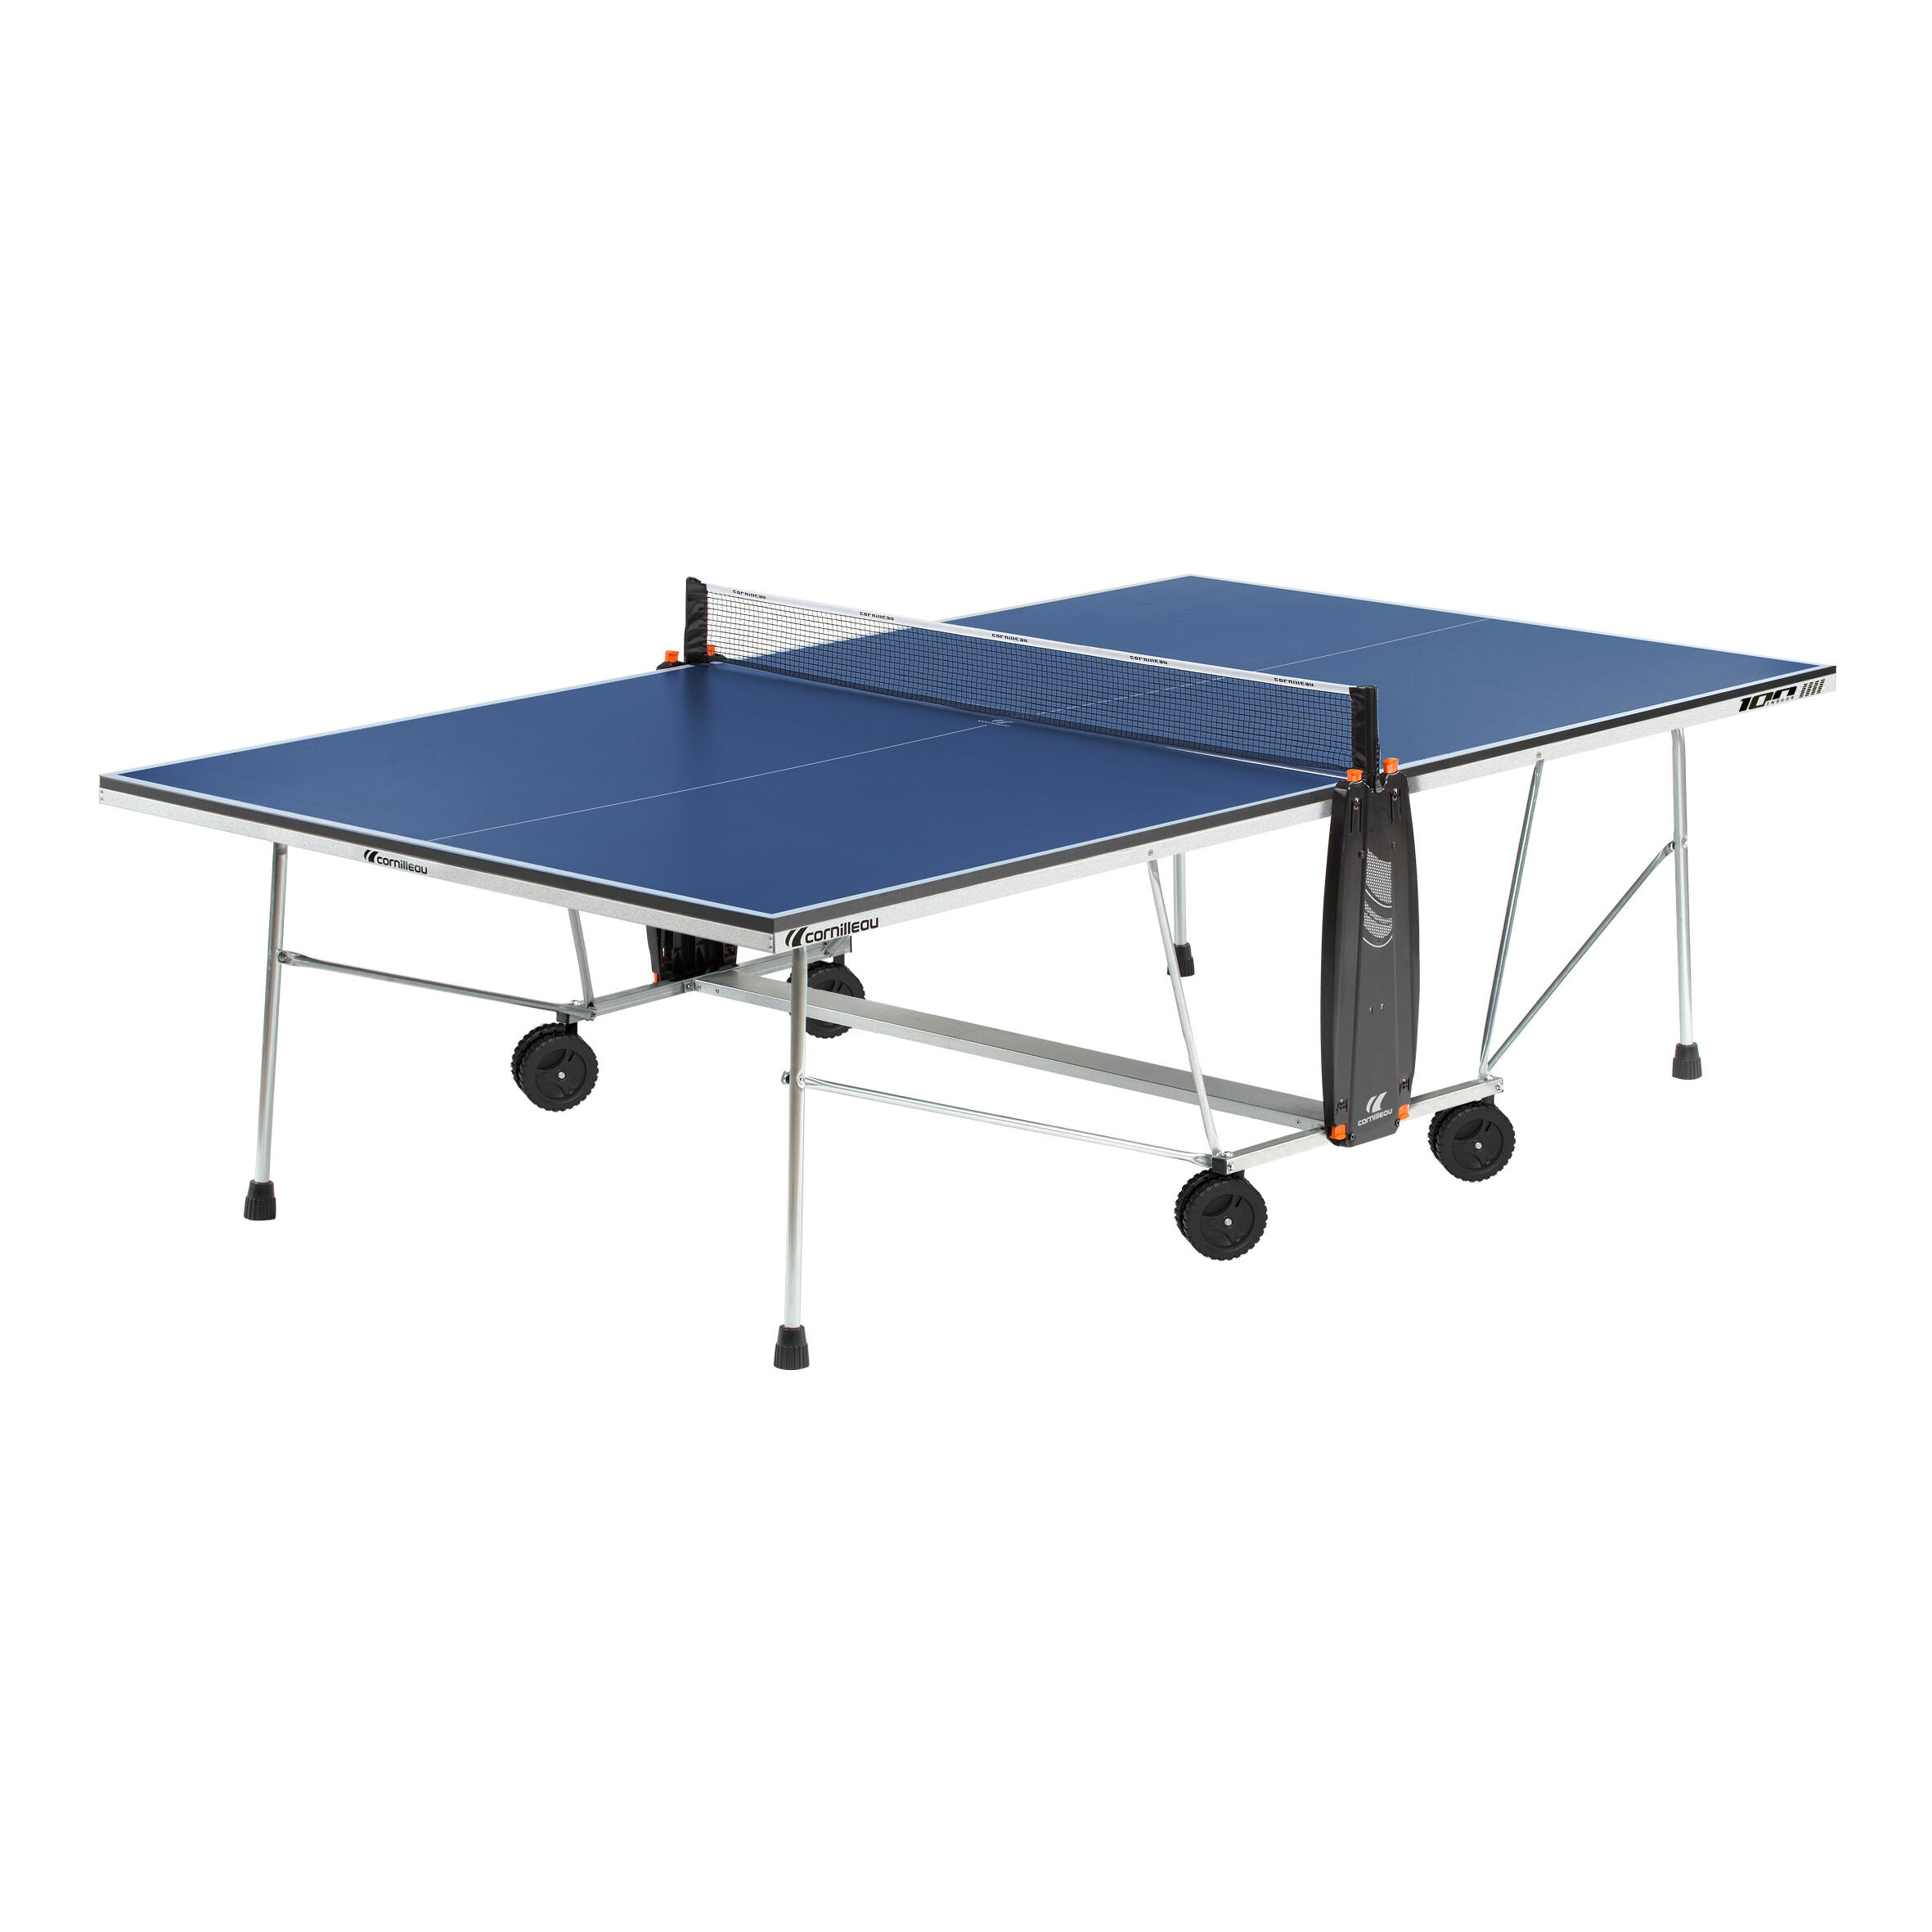 decathlon table tennis table